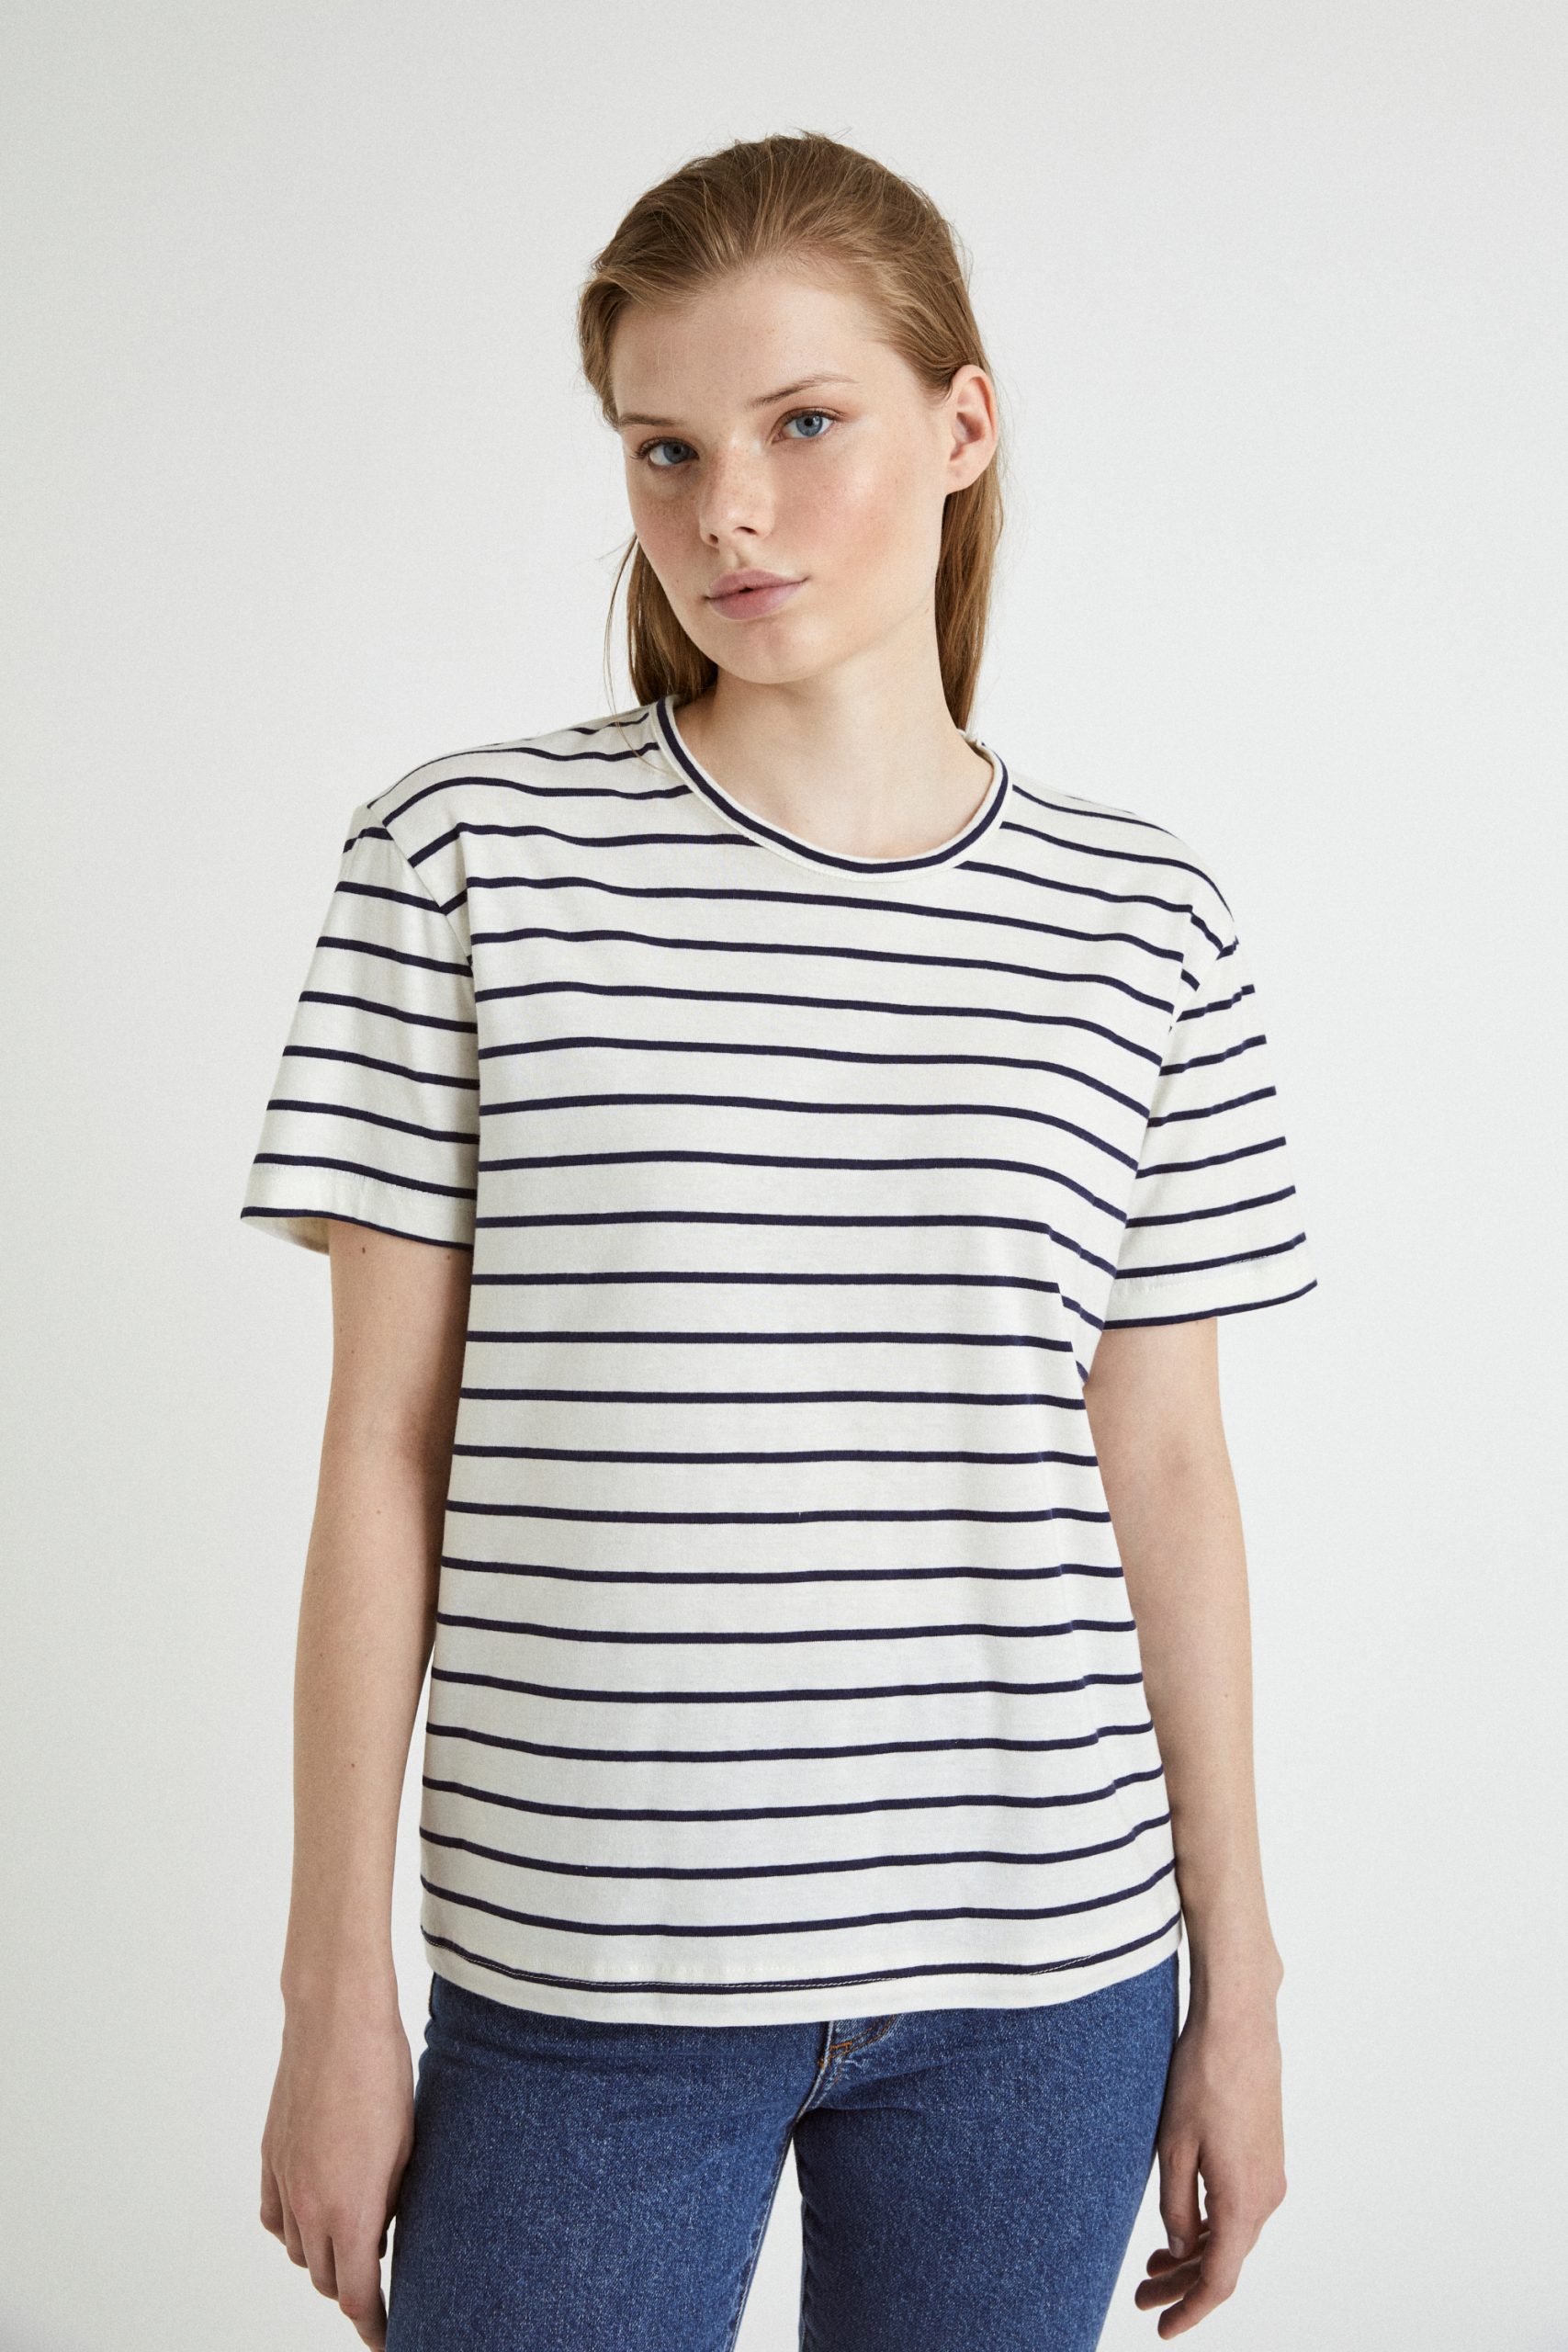 T-Shirt Stripes White Black 2